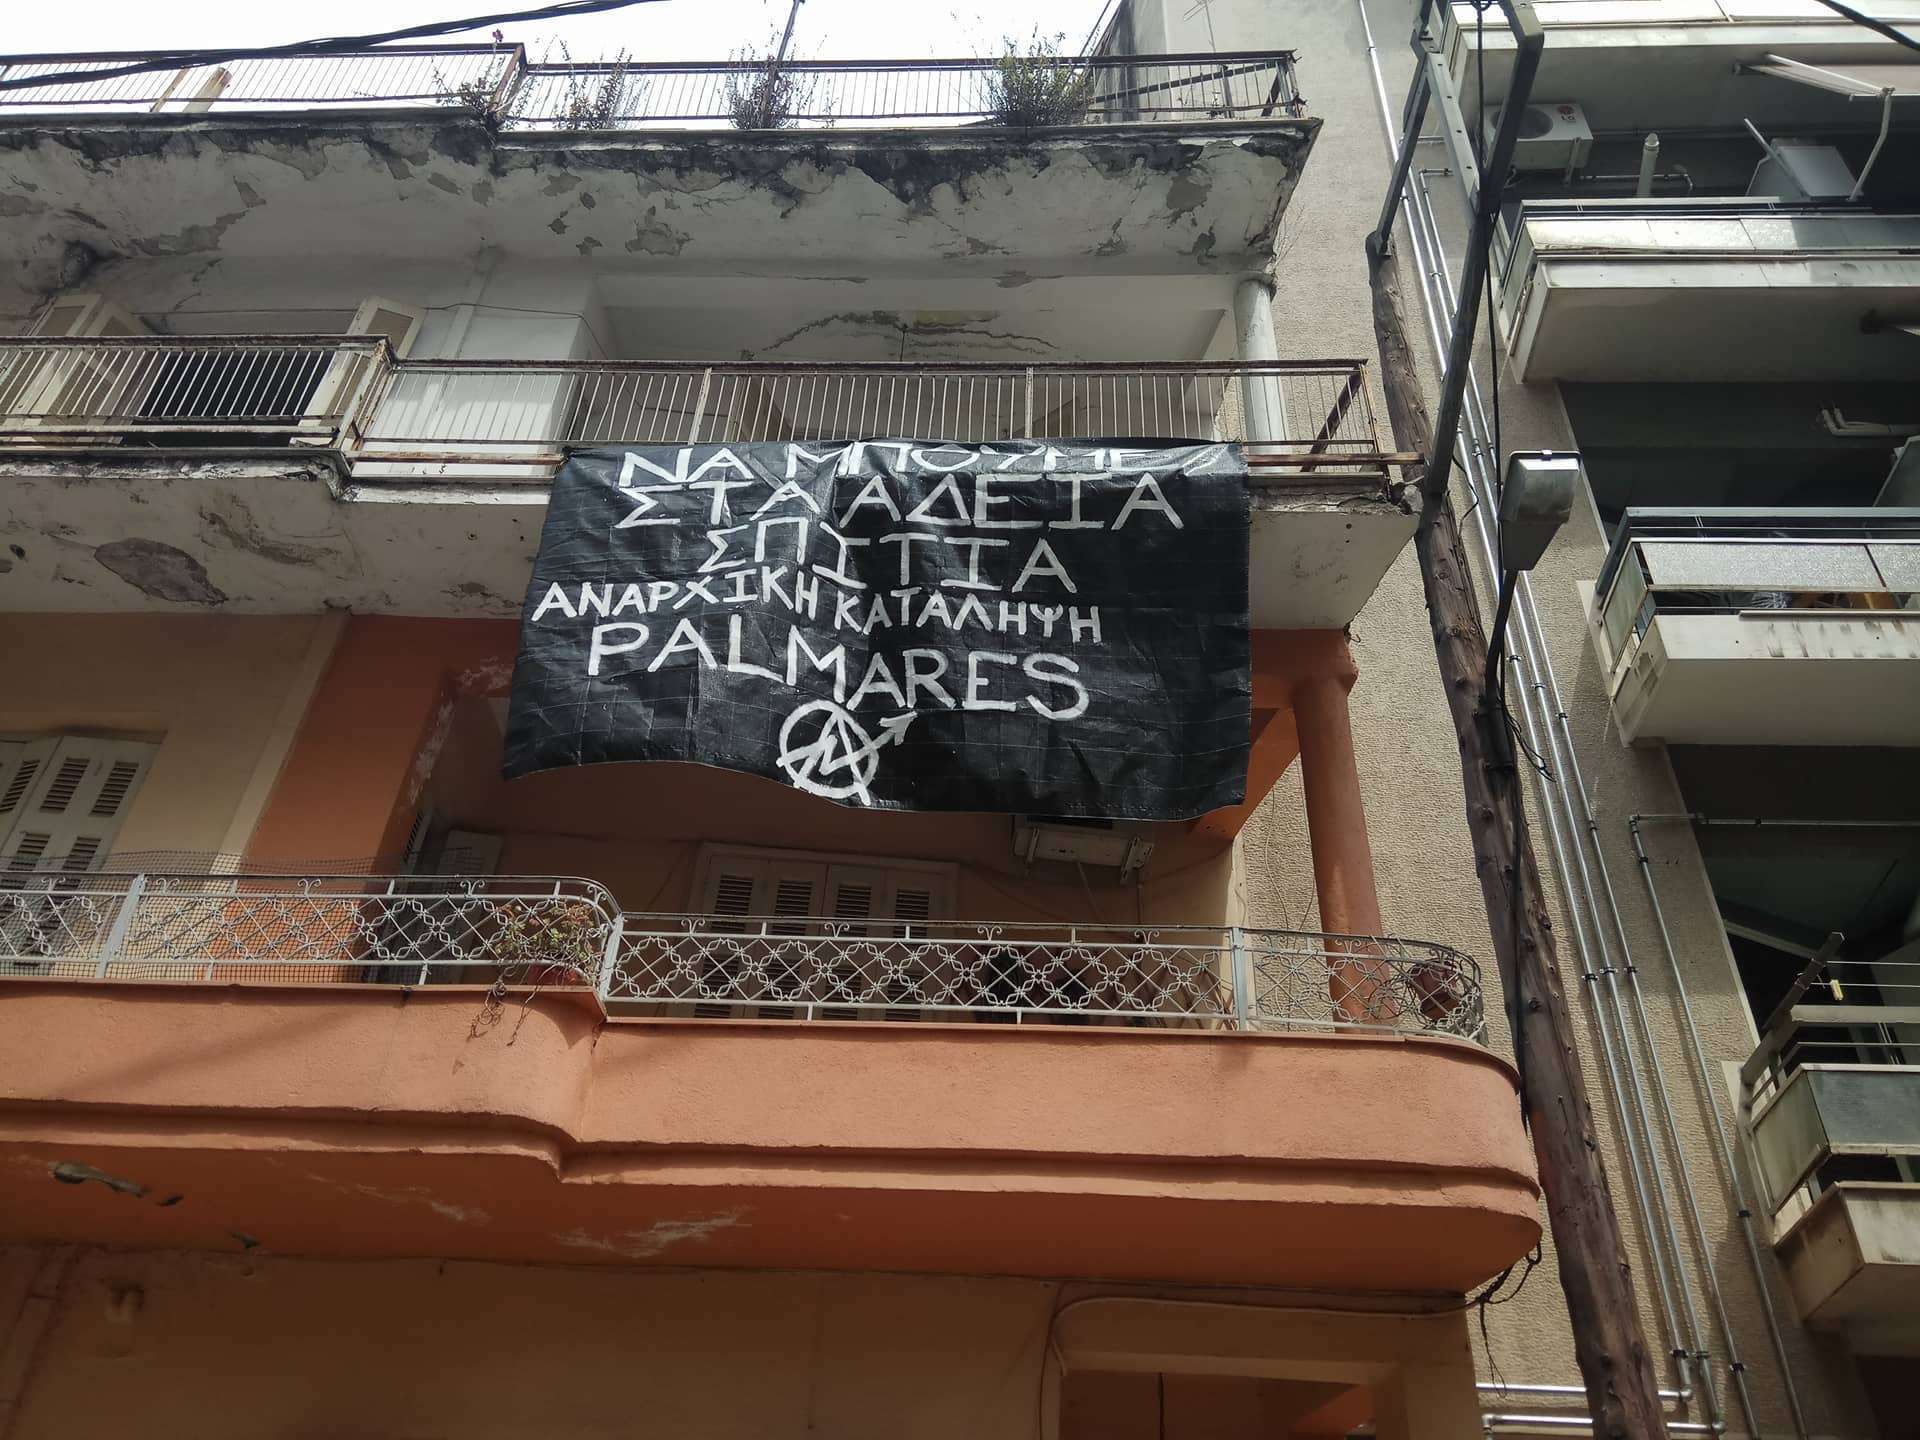 Αναρχική Κατάληψη Palmares: Σχετικά με την παρέμβαση στο γηροκομείο Λάρισας